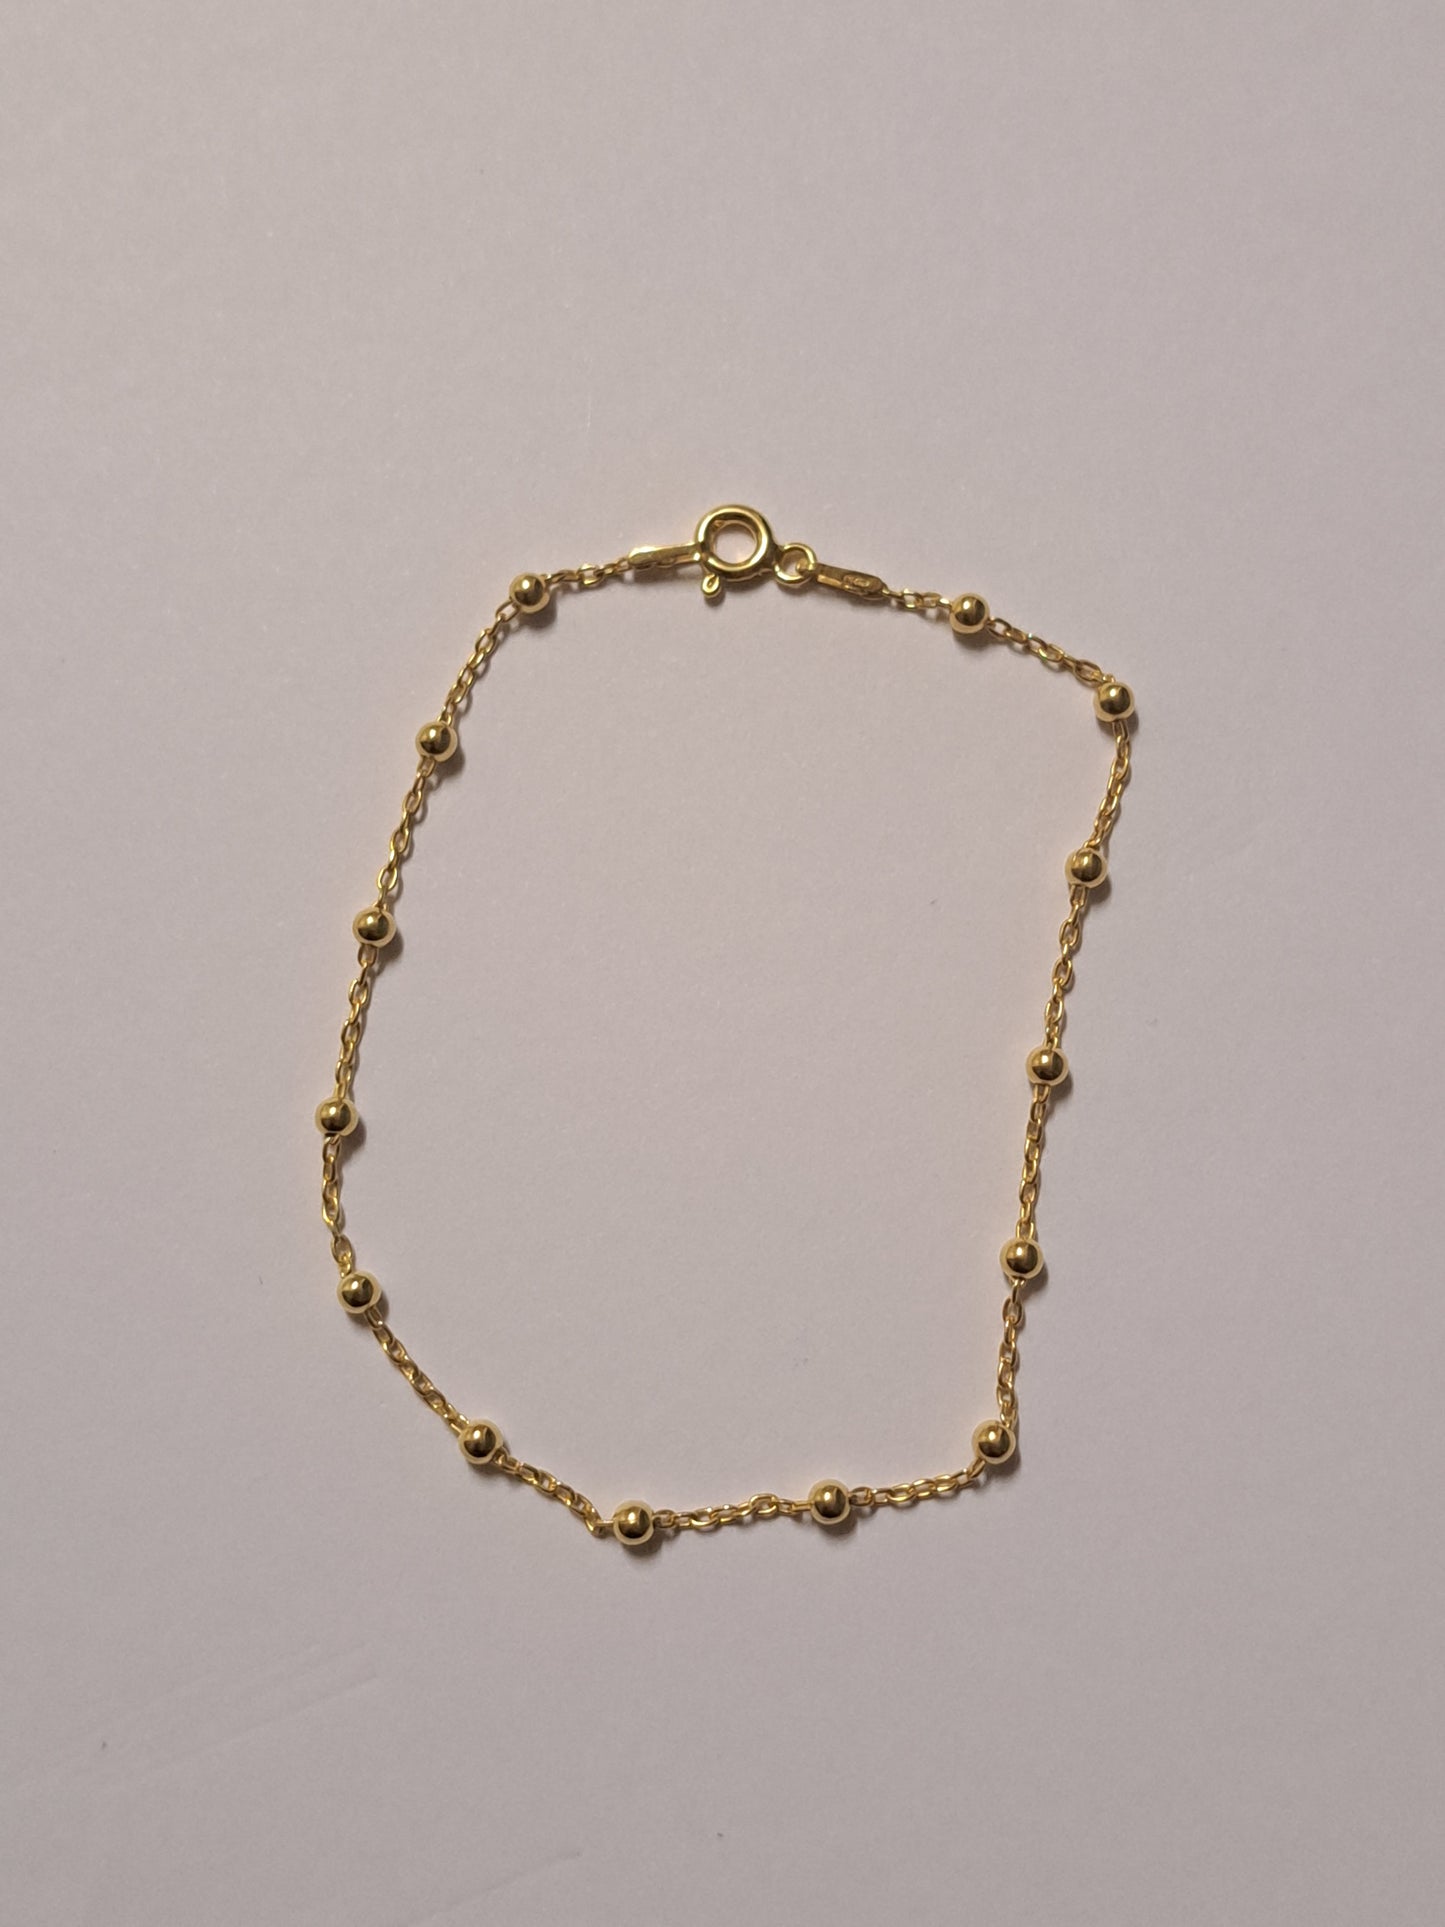 Bracelet perlé en argent doré à l'or 24k. Site de bijoux. France